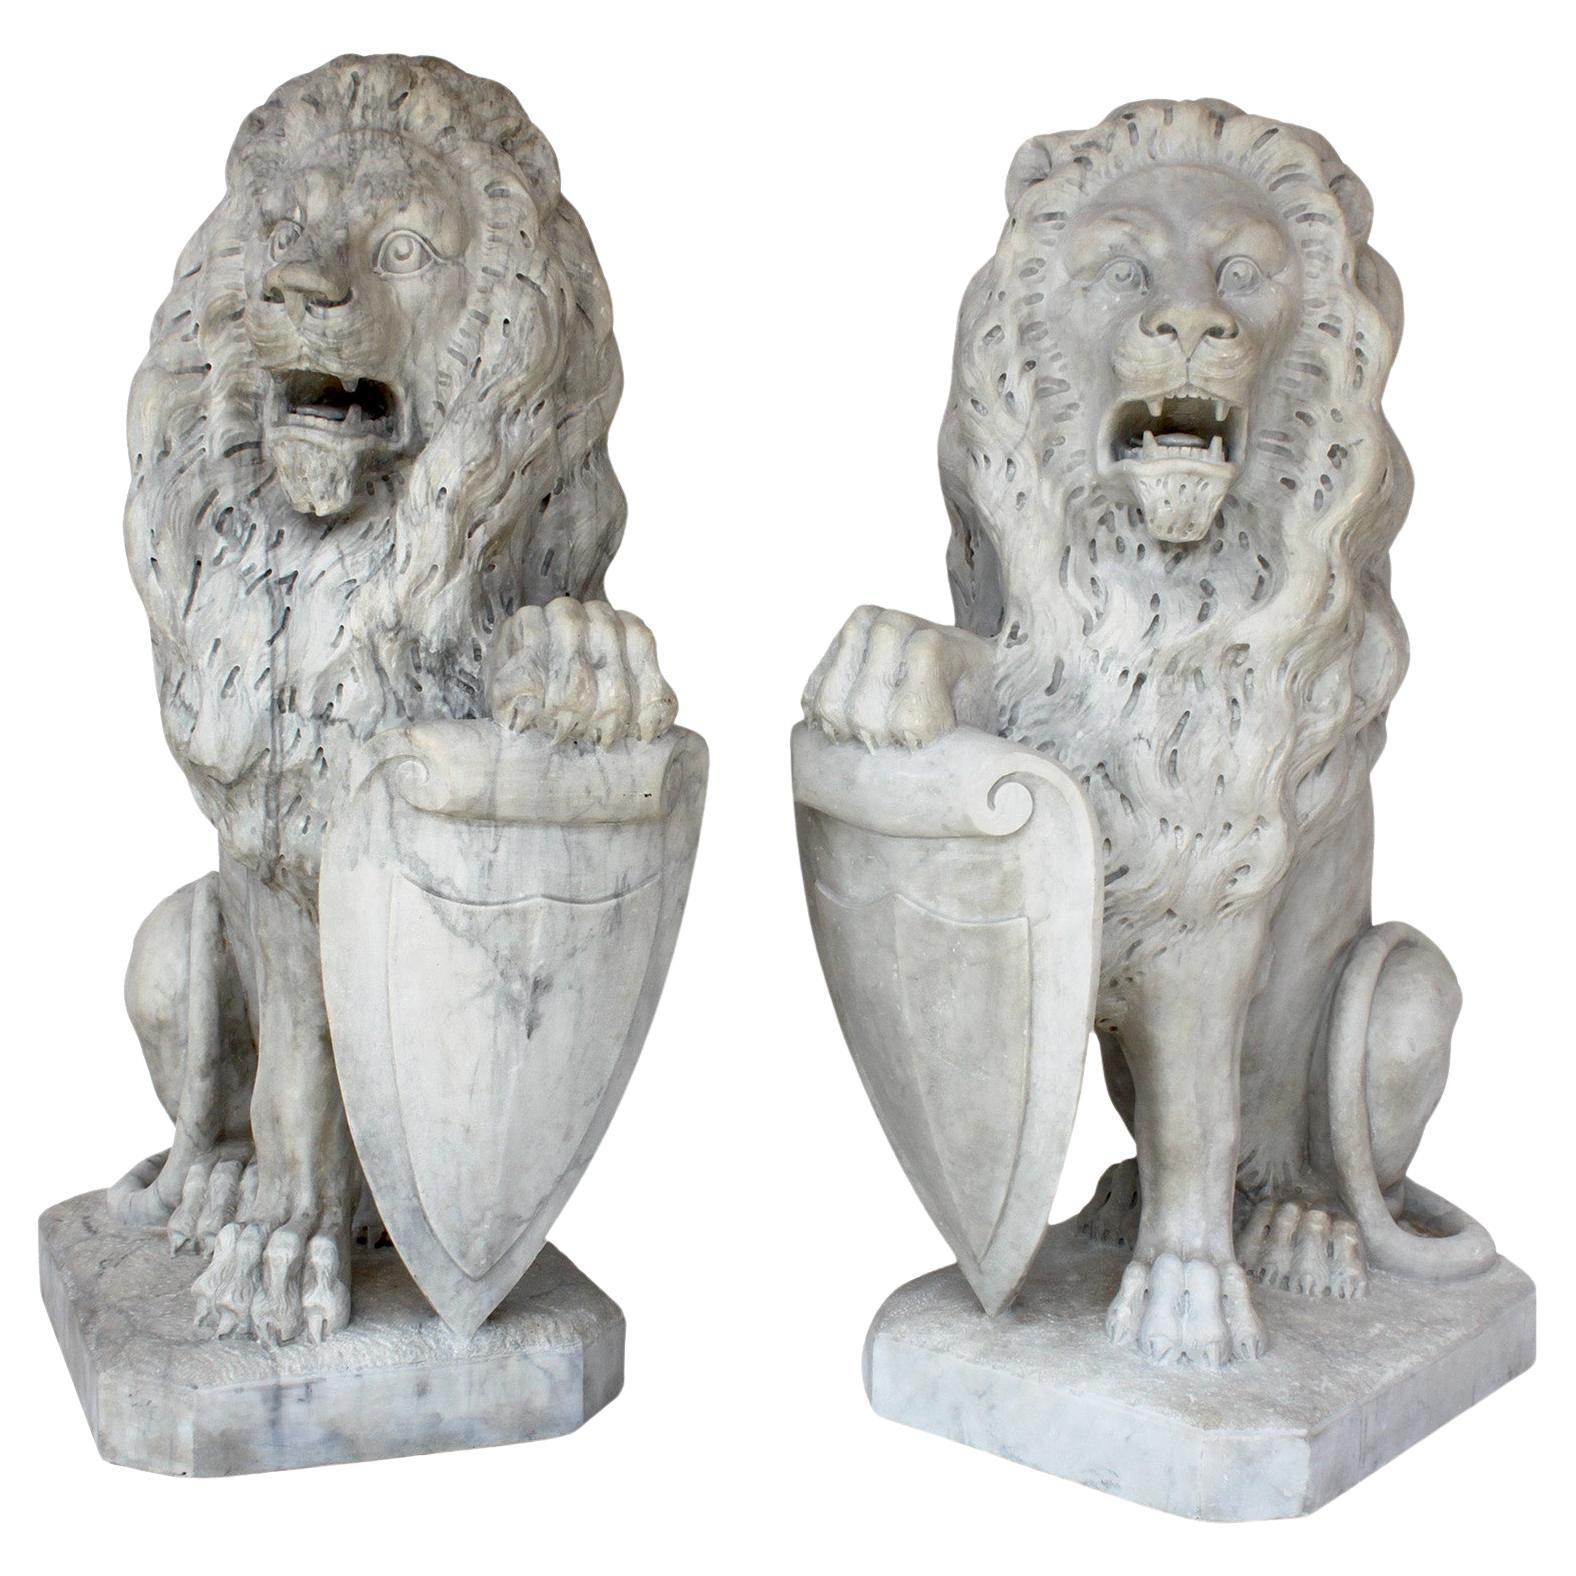  Paire de lions assis en marbre sculpté du 19ème siècle de style baroque français